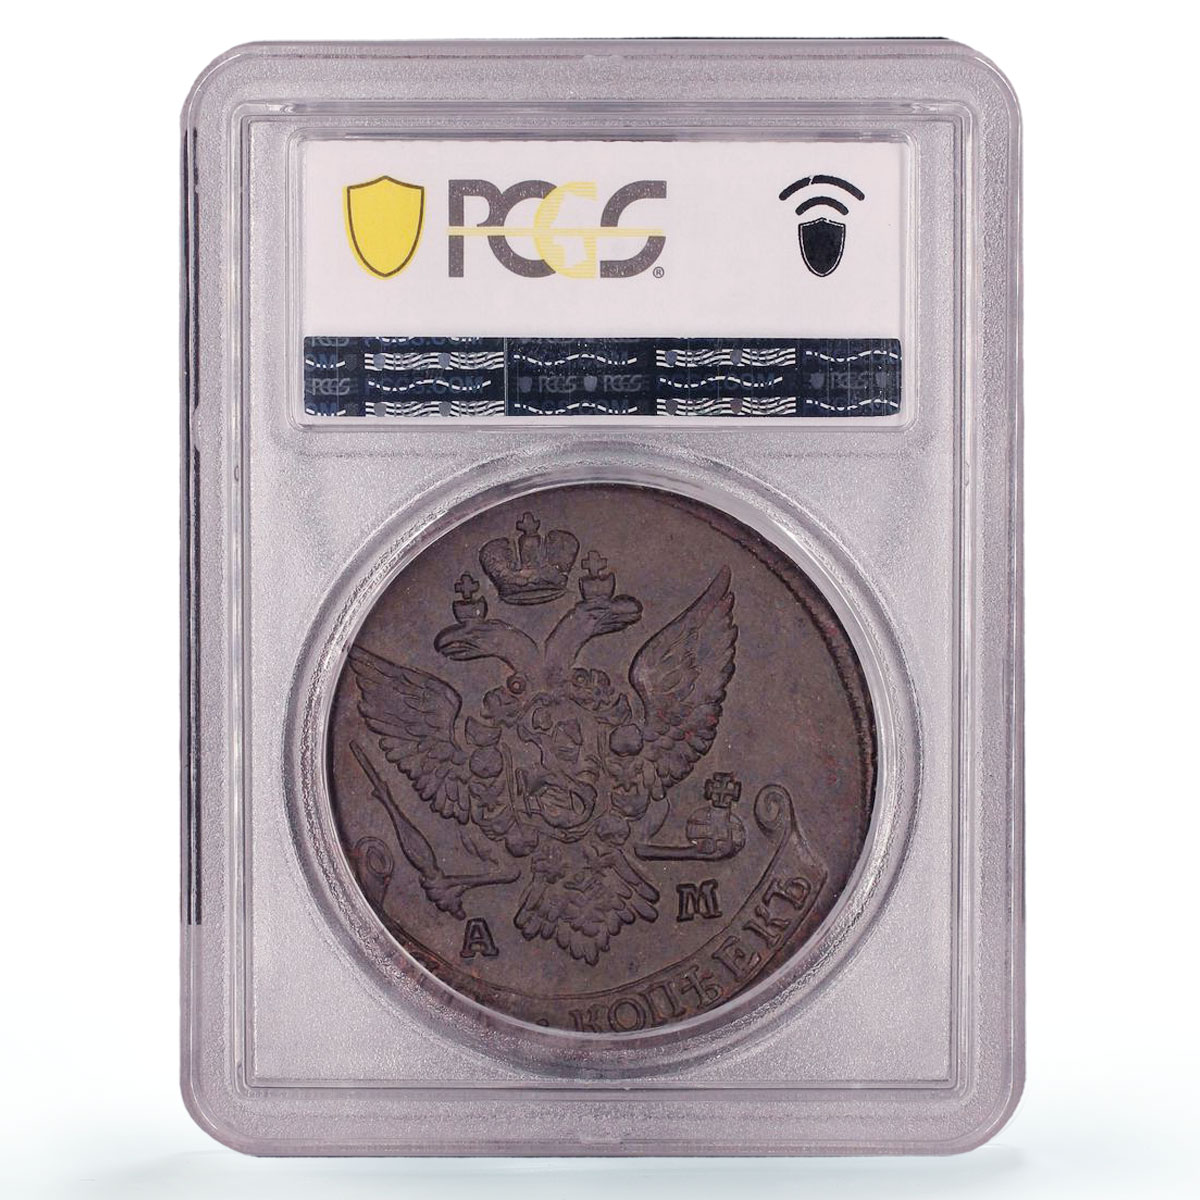 Russia Empire 5 kopecks Ekaterina II Coinage Bit-861 AU58 PCGS copper coin 1791